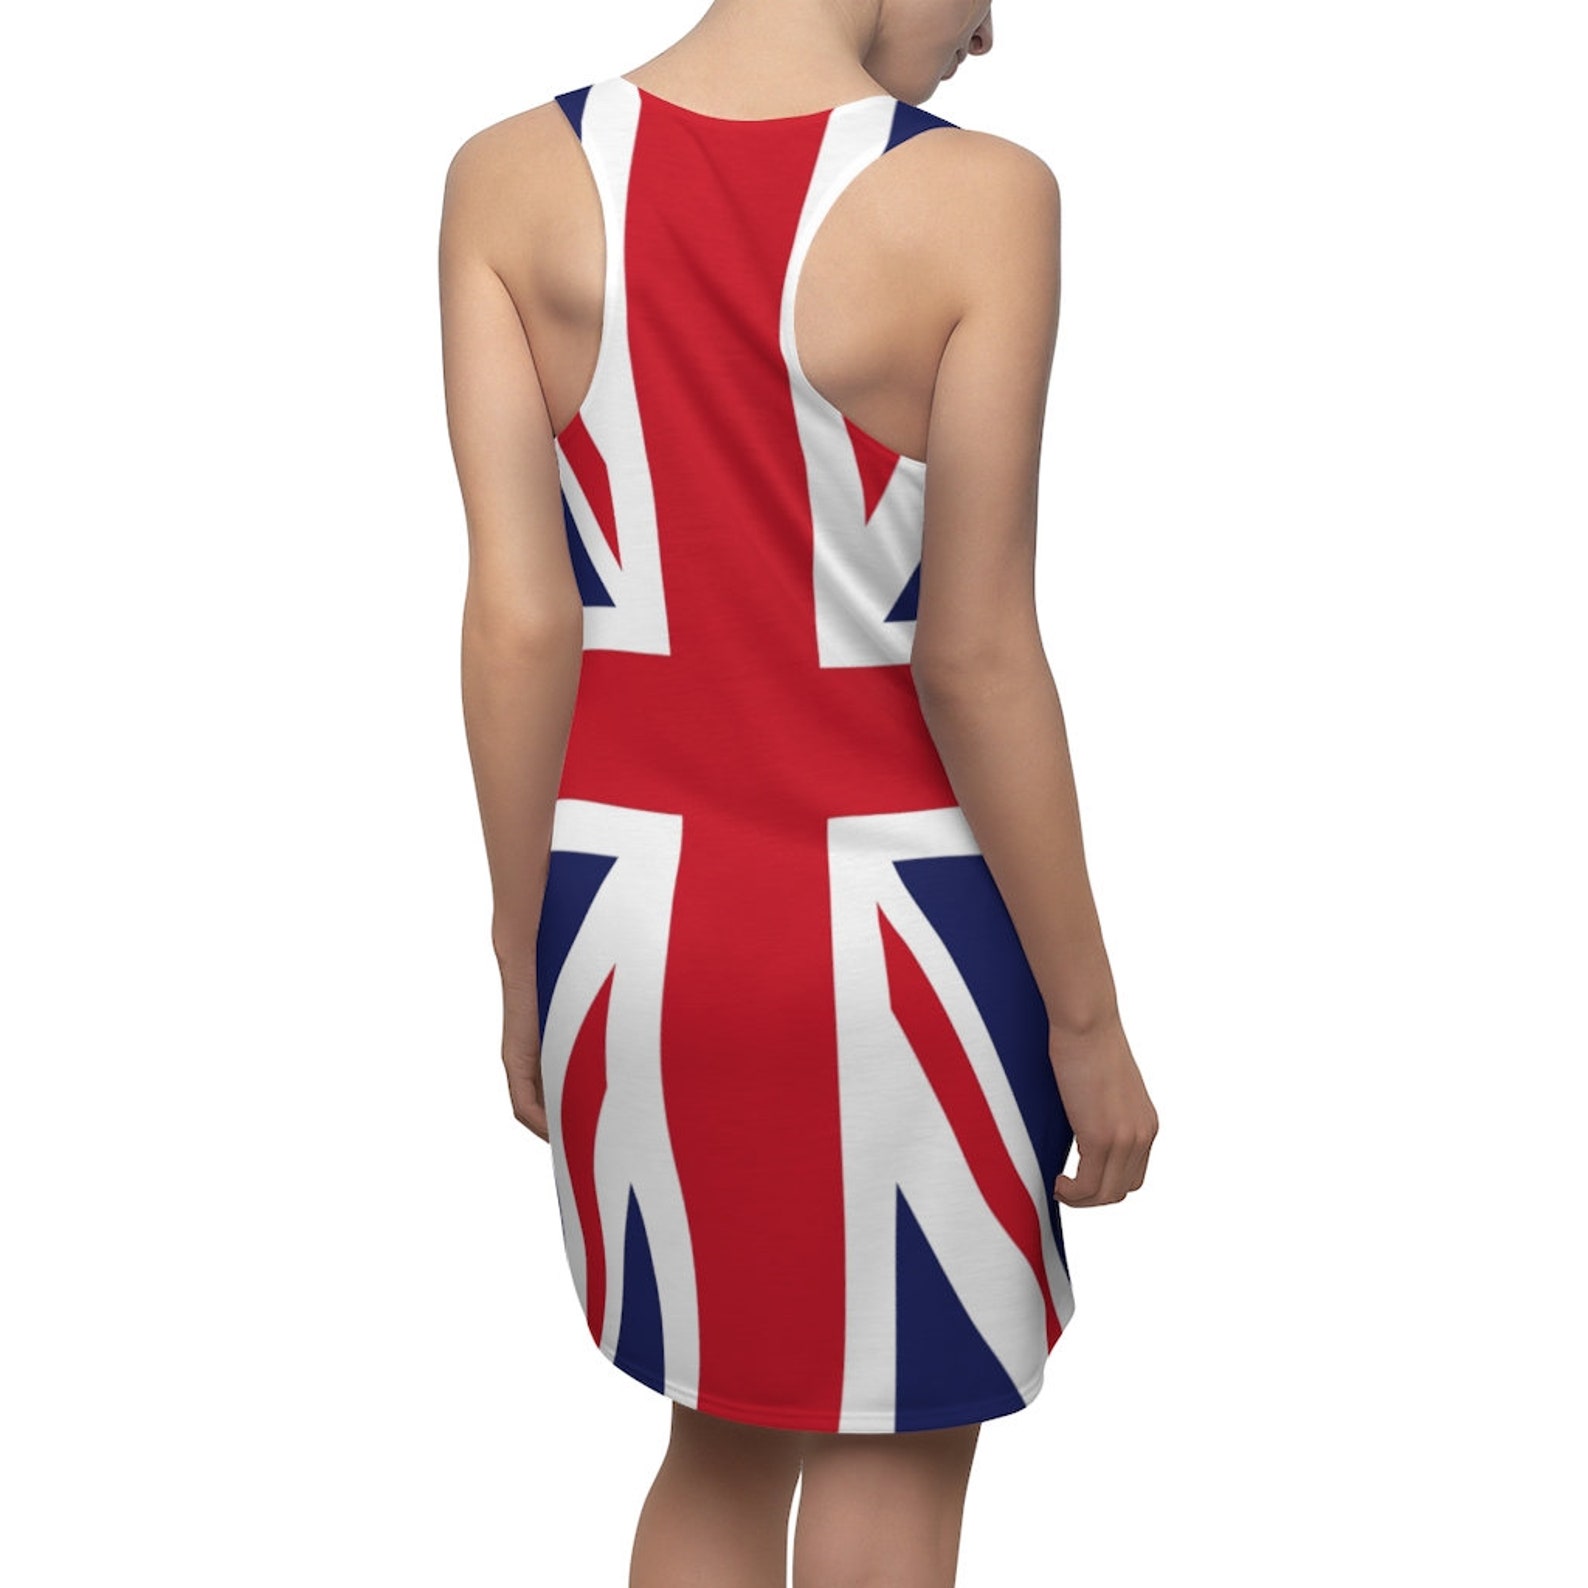 Union Jack Racerback Dress British Flag Dress - Etsy